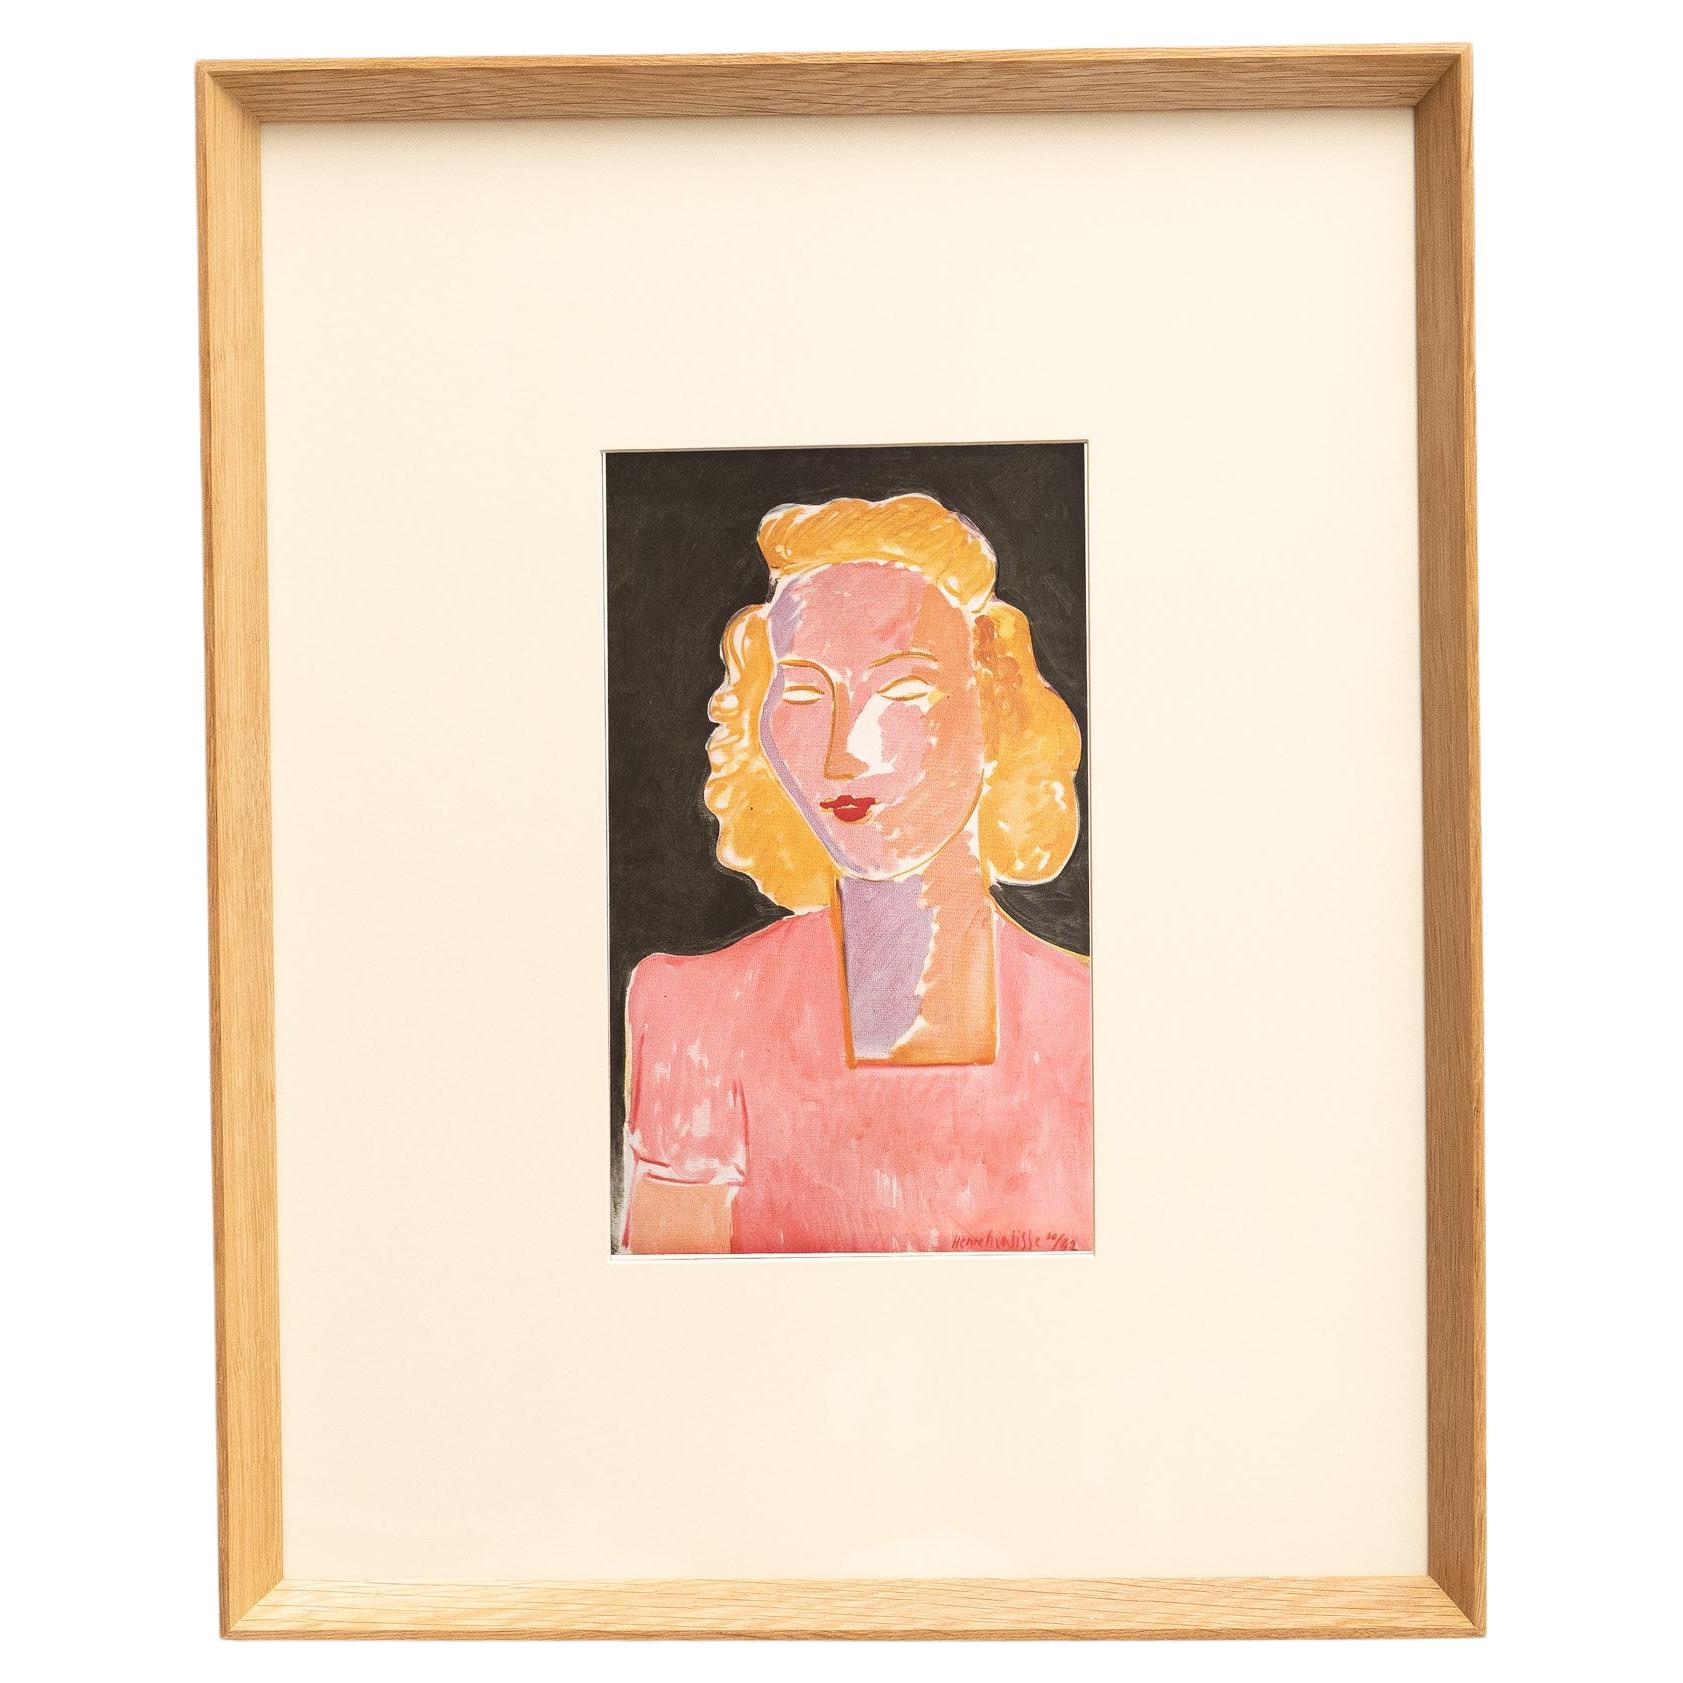 Rare Color Lithograph: A Glimpse into Matisse's Artistic Mastery For Sale